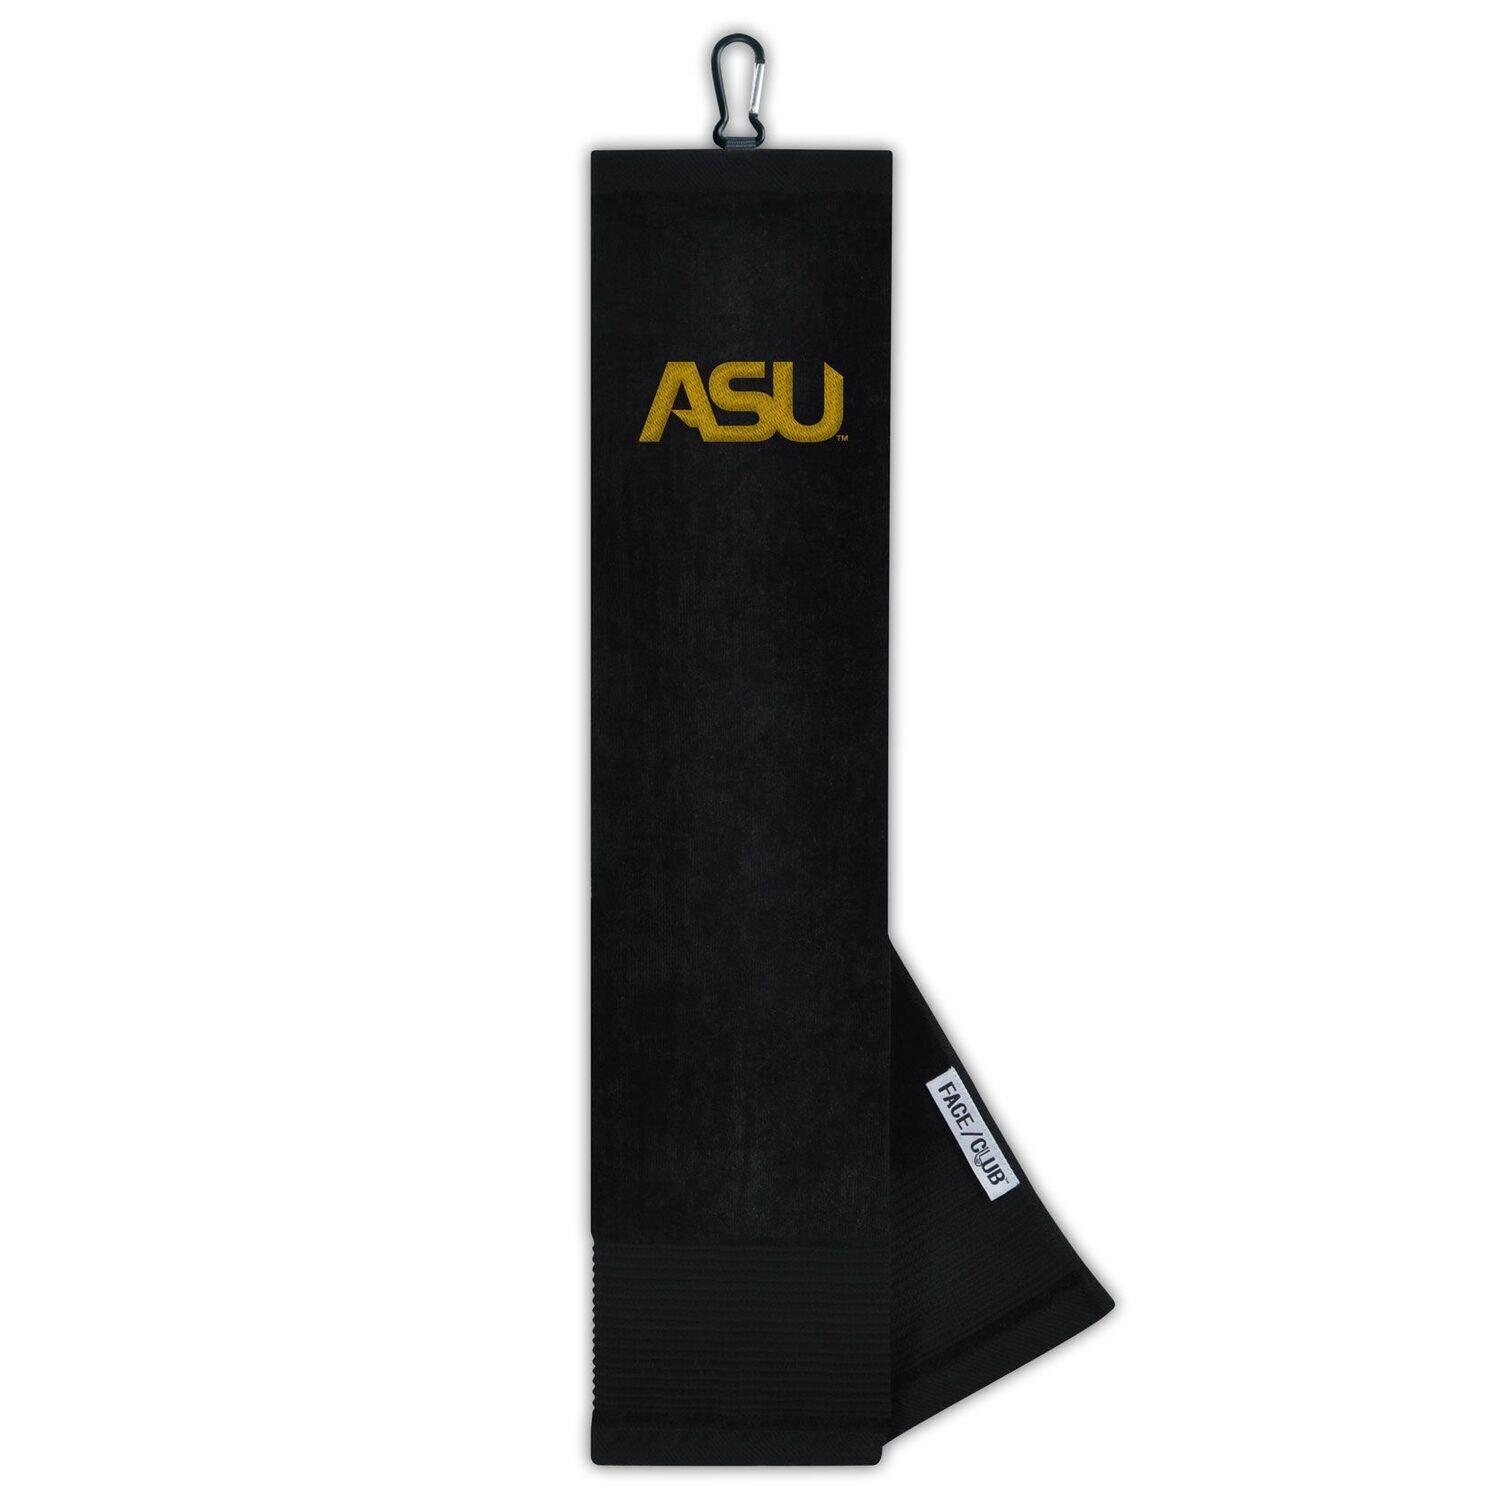 ASU Golf Towel